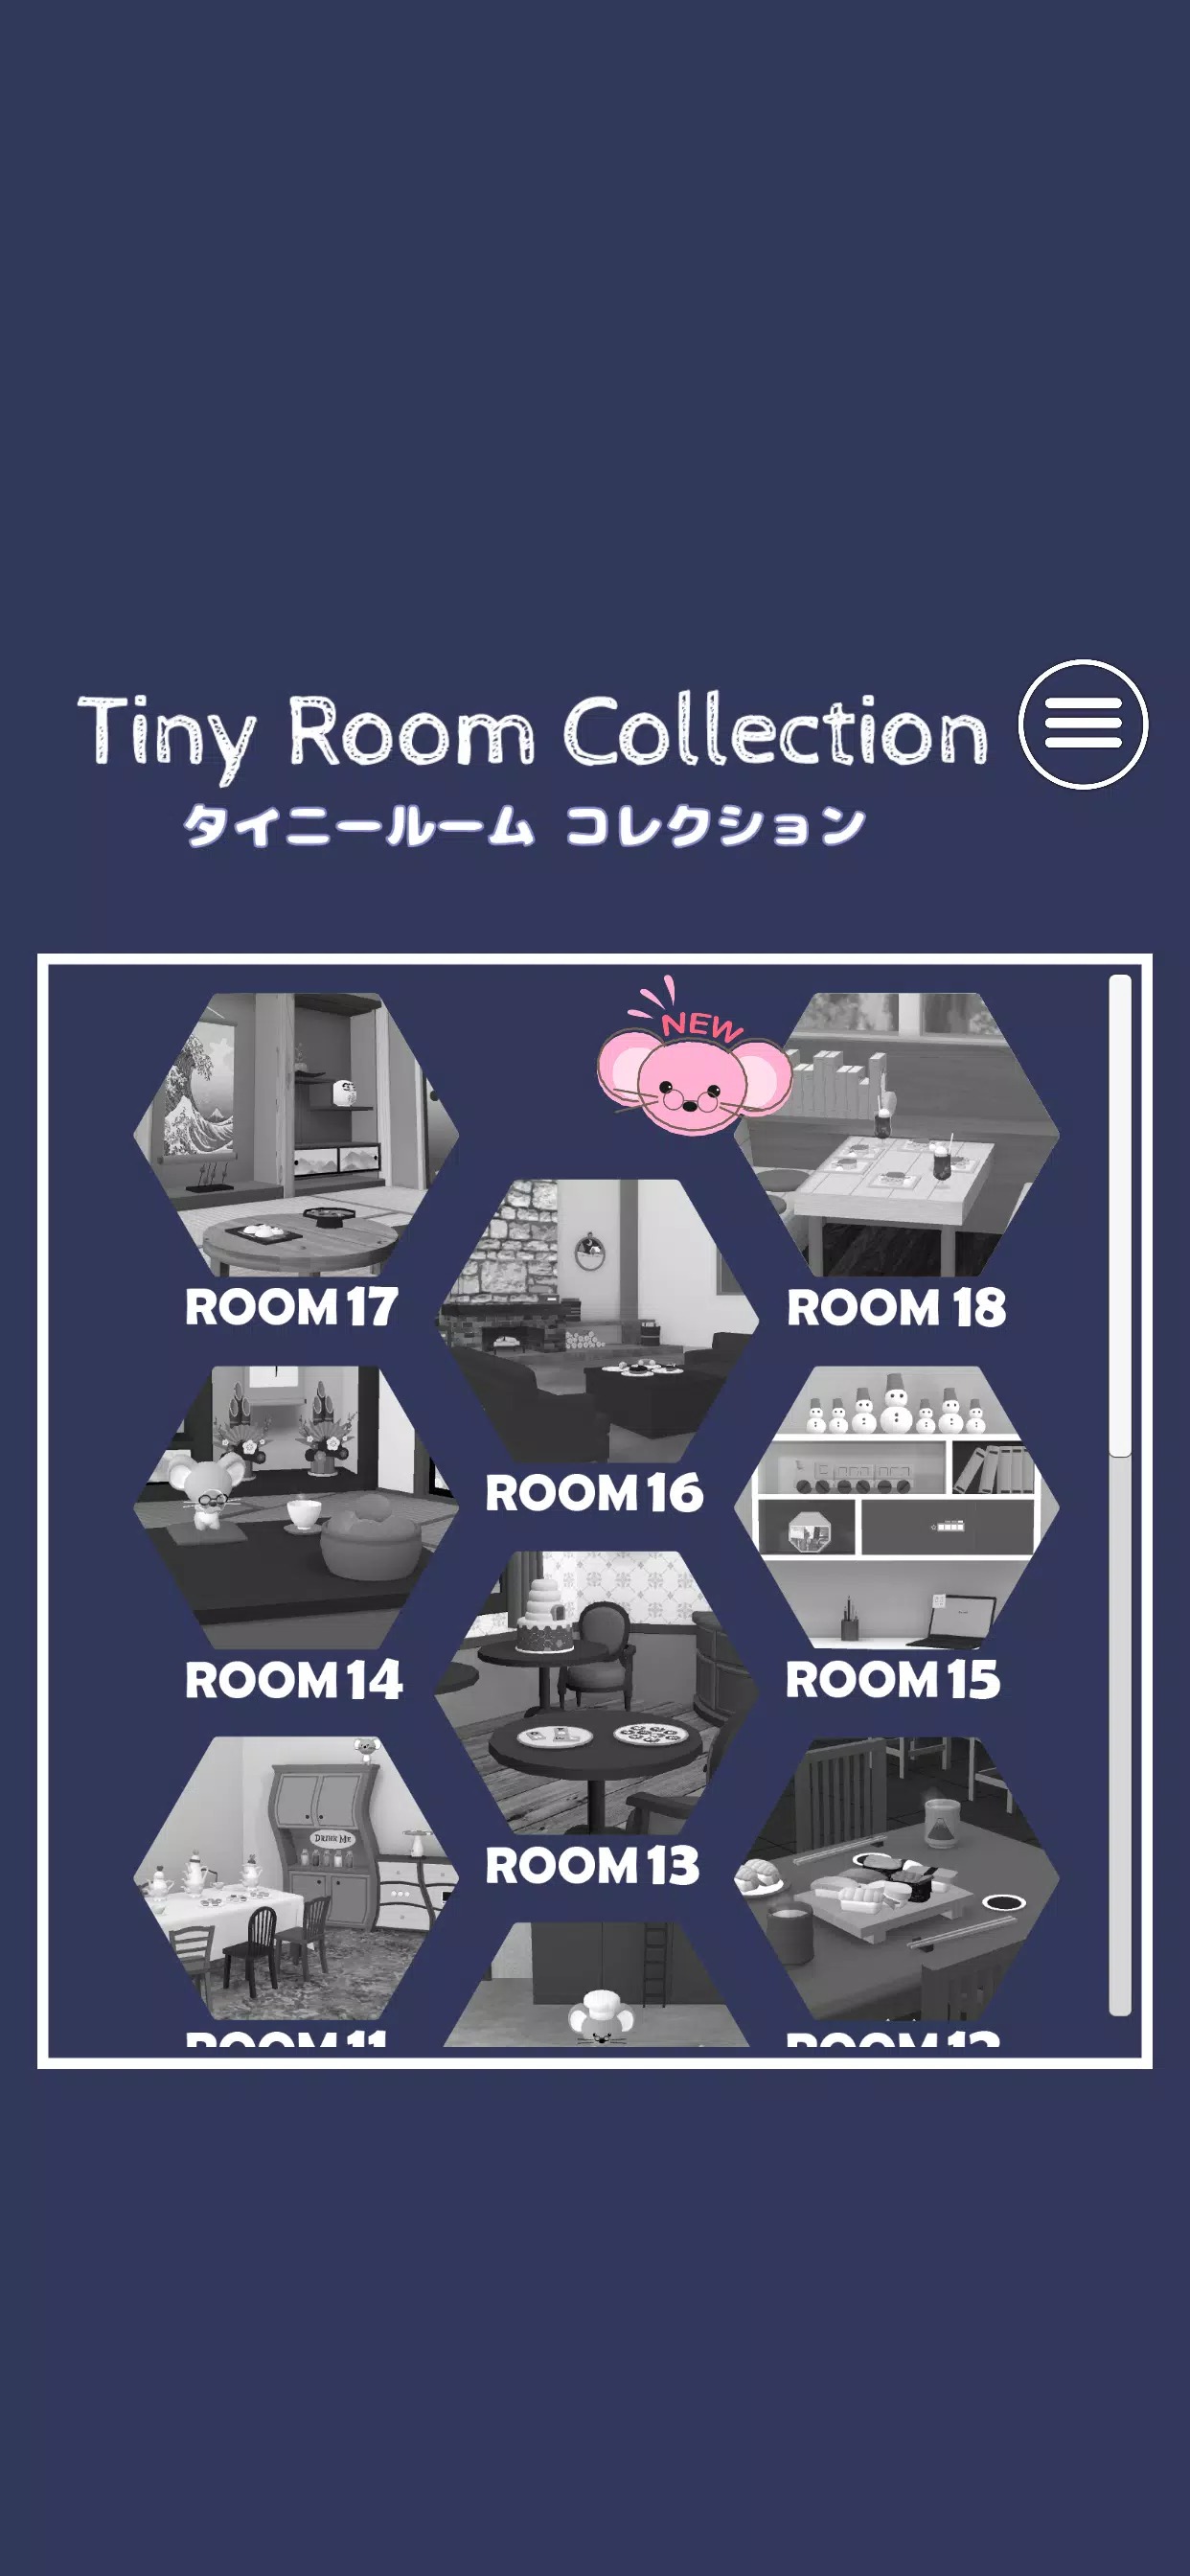 微型密室游戏(Tiny Room)